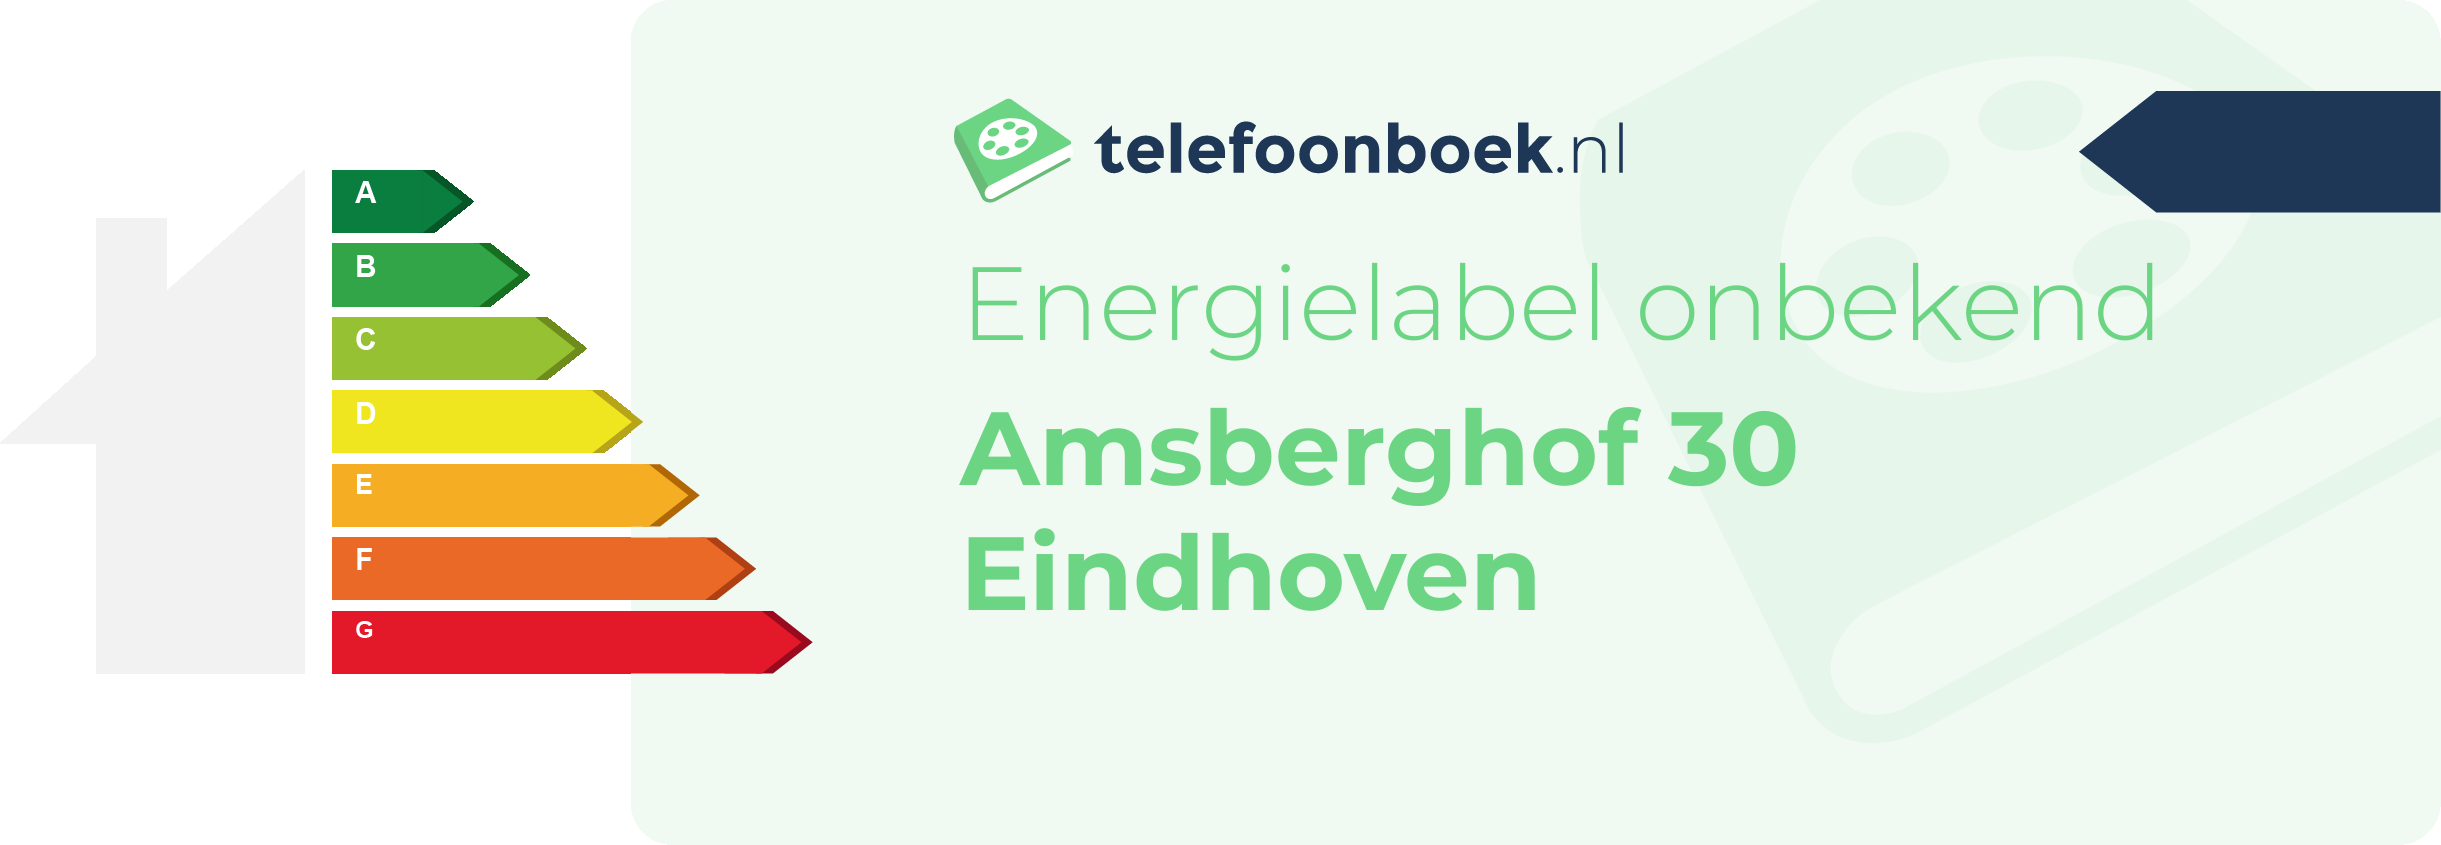 Energielabel Amsberghof 30 Eindhoven